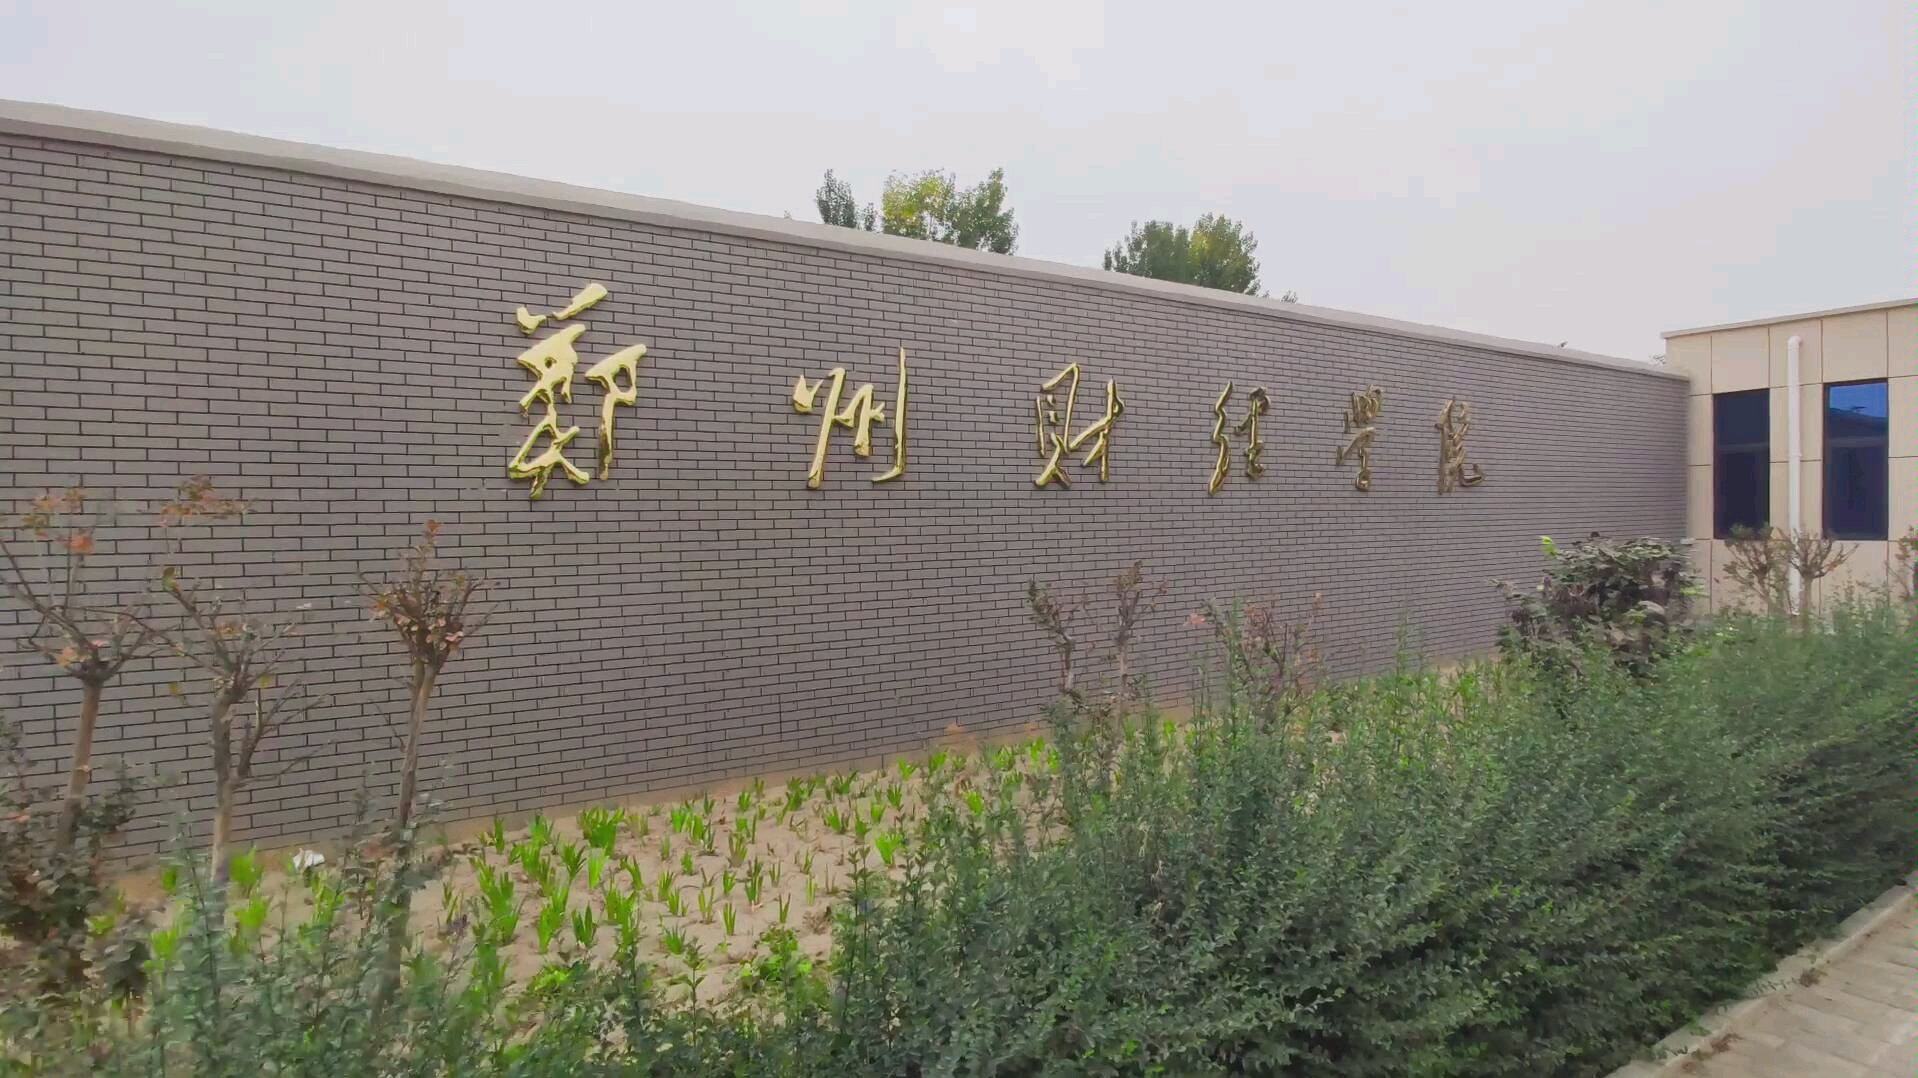 郑州财经学院 校园图片